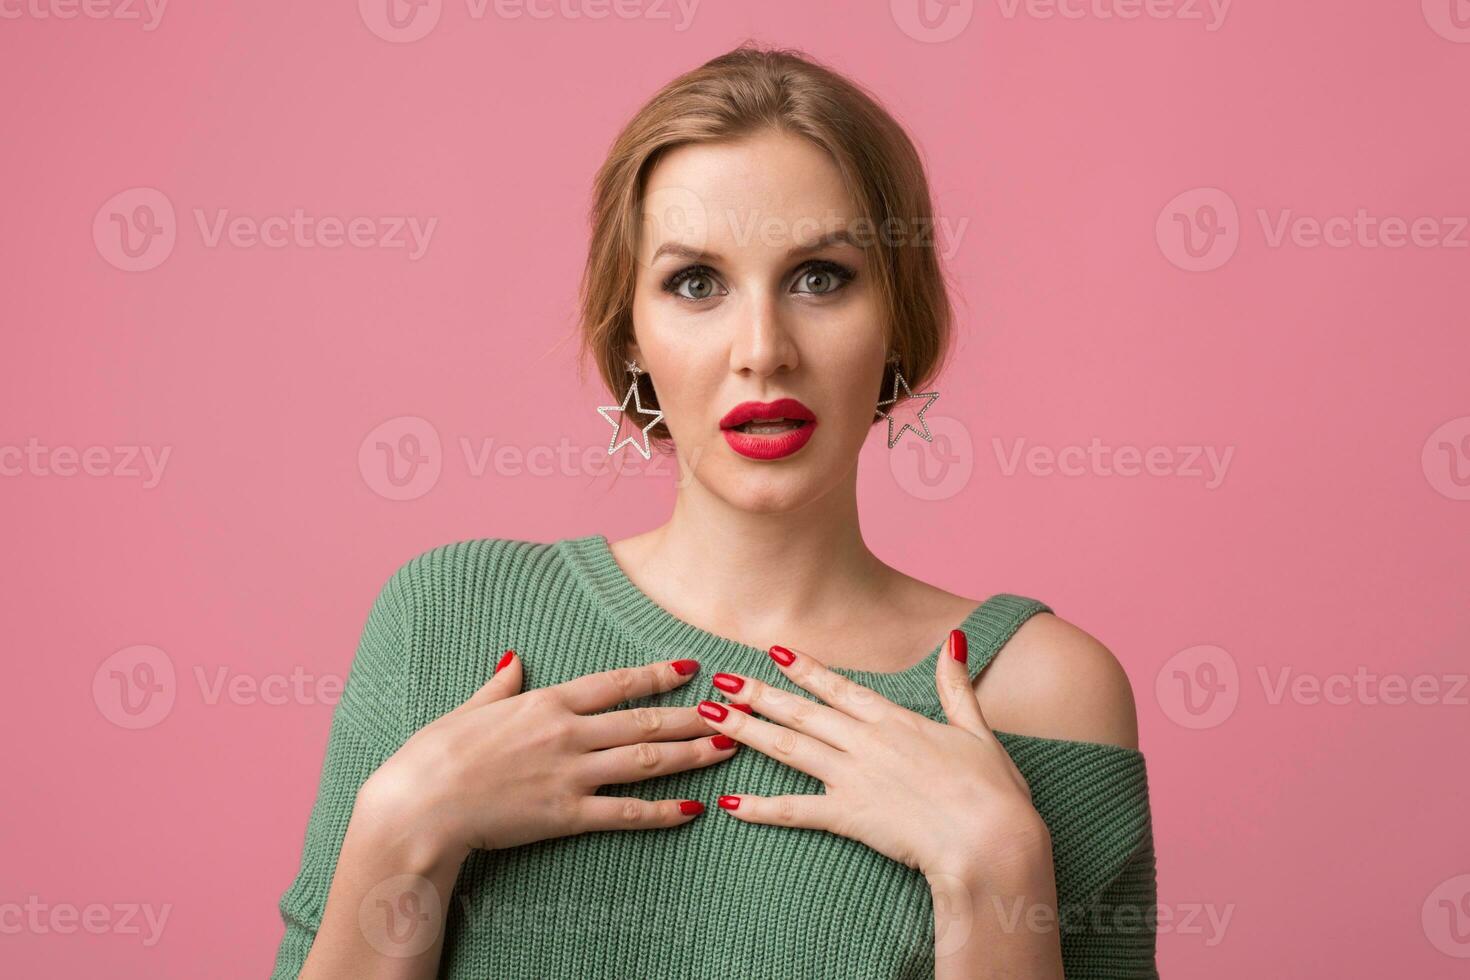 giovane attraente donna nel verde maglione, rosa sfondo foto